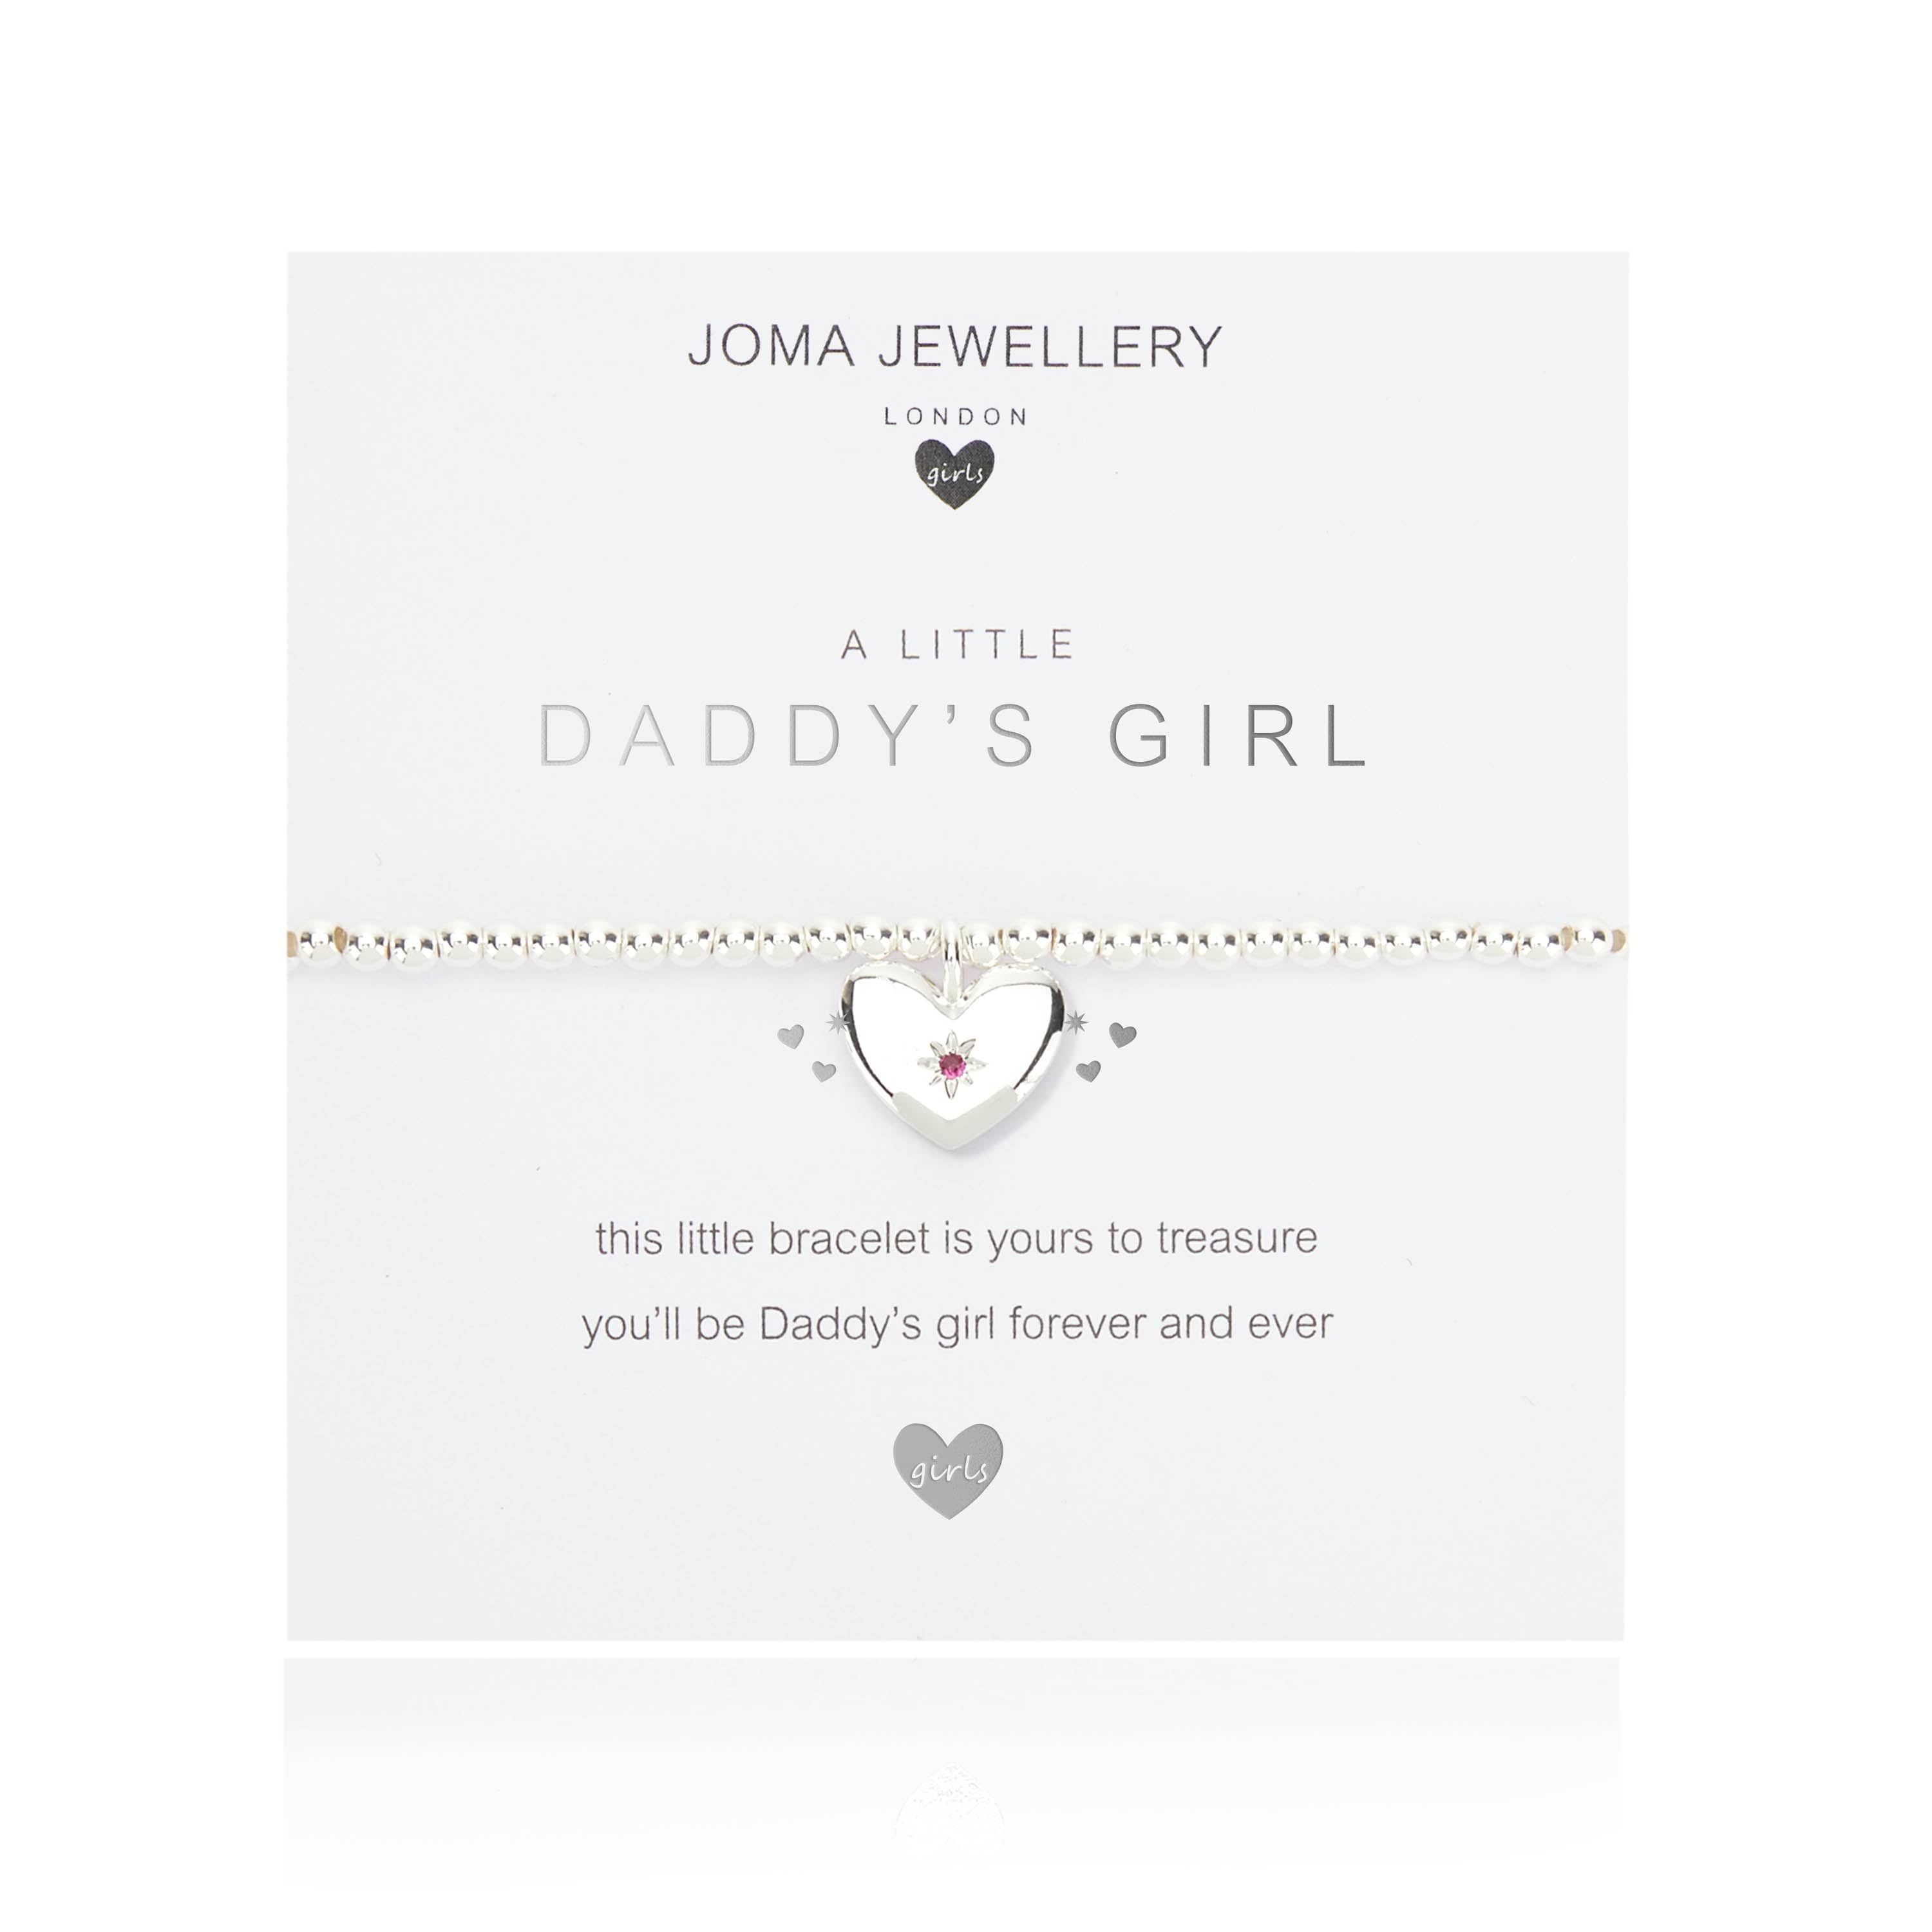 Joma Jewellery Childrens Bracelet Joma Jewellery Childrens Bracelet - A Little Daddy's Girl